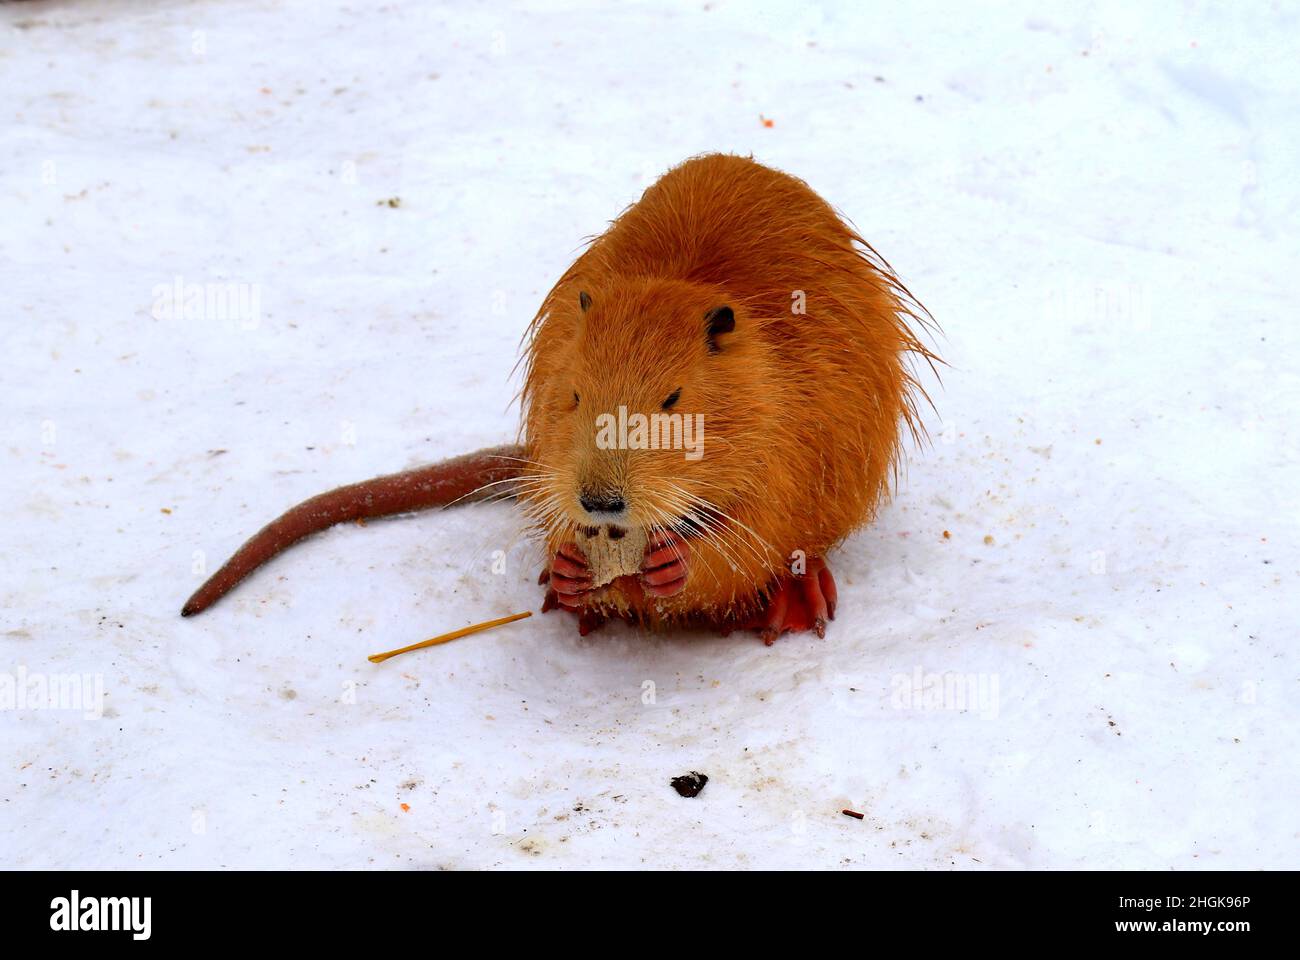 Nutria amarillo nutria castor de pantano comer en la nieve. Rata de agua, muskrat se sienta en la nieve en un parque zoológico de invierno granja forestal. Foto de stock